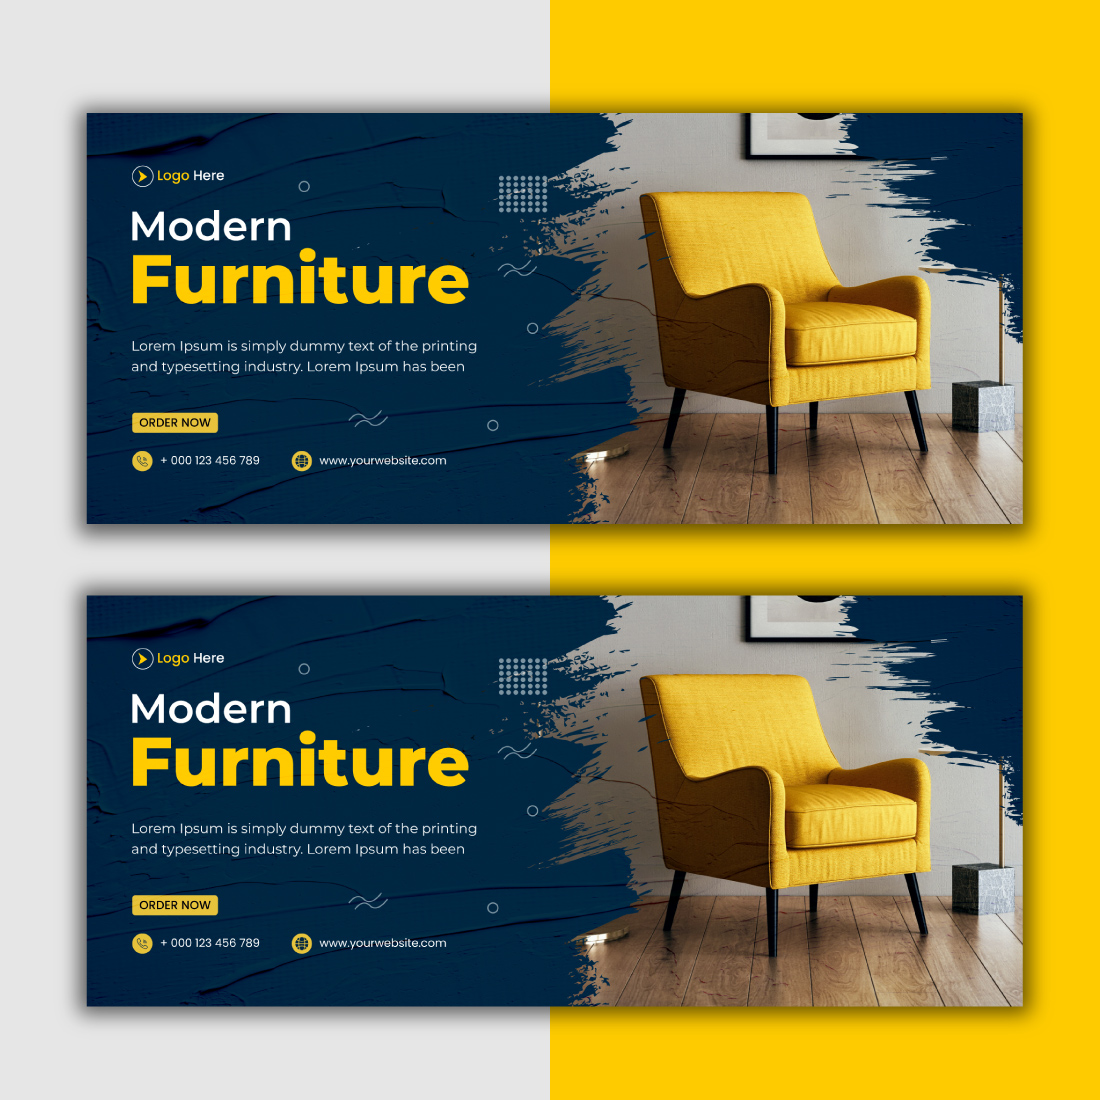 Modern Furniture Sale Promotion Facebook Banner Design cover image.